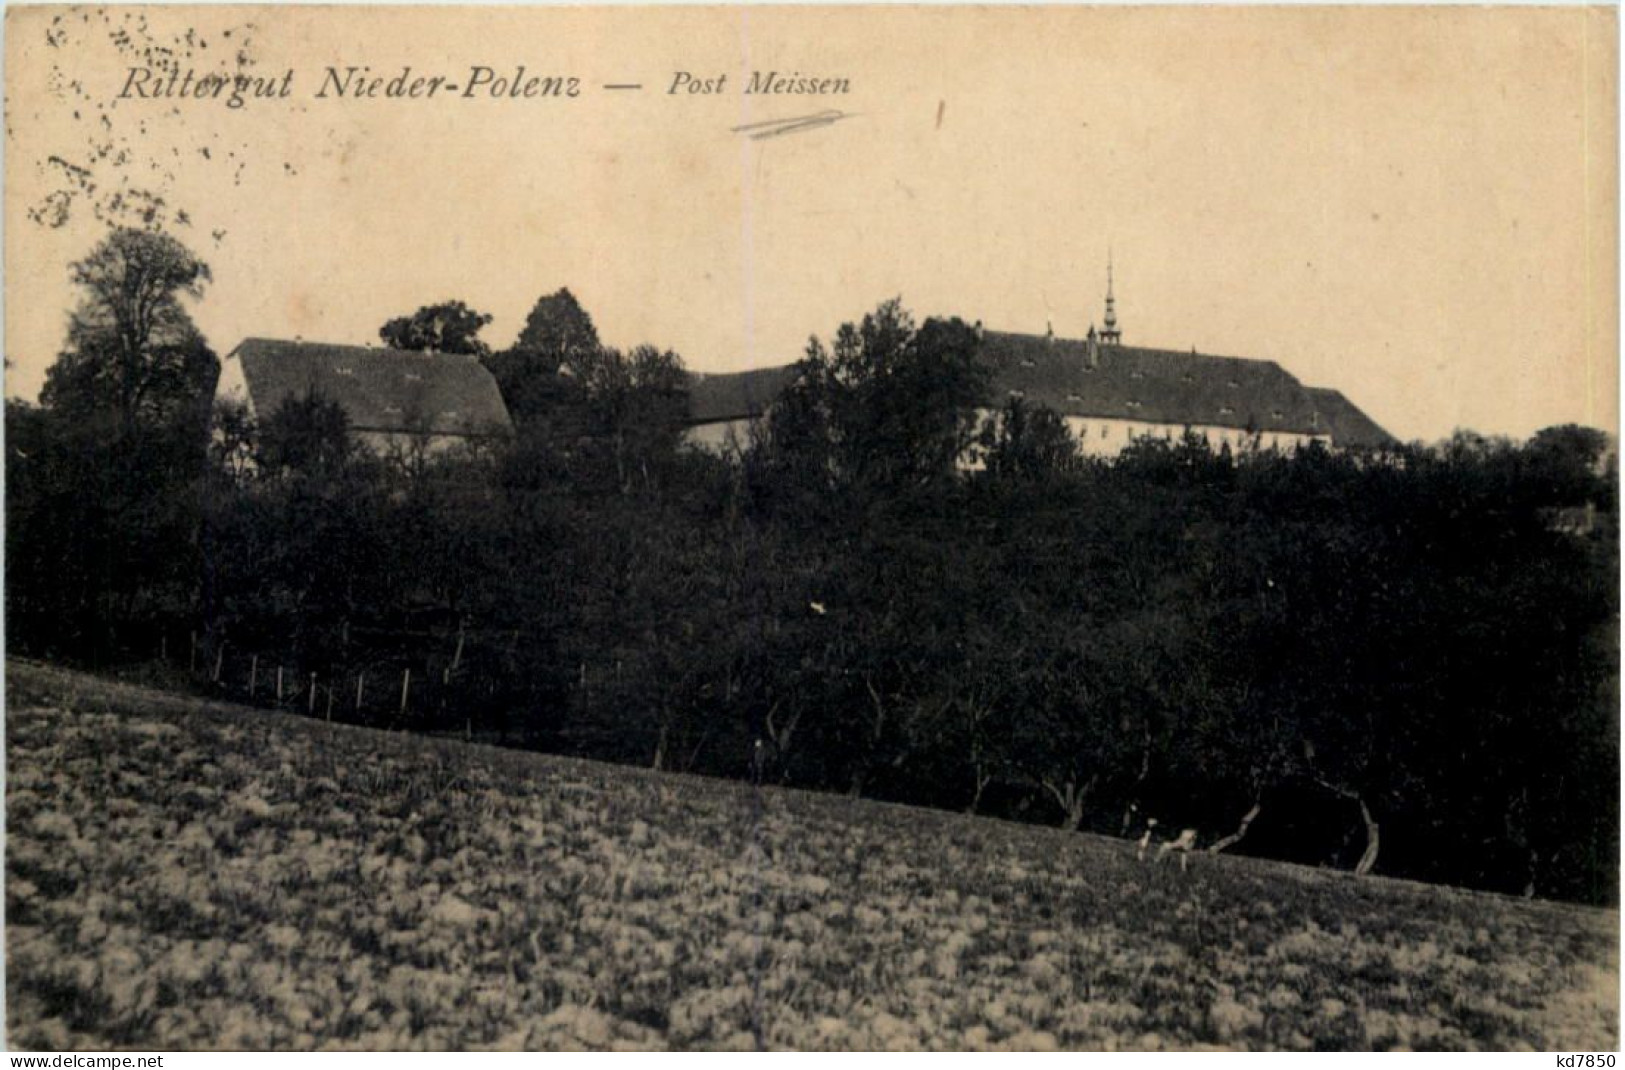 Zehren, Rittergut Nieder-Polenz - Meissen